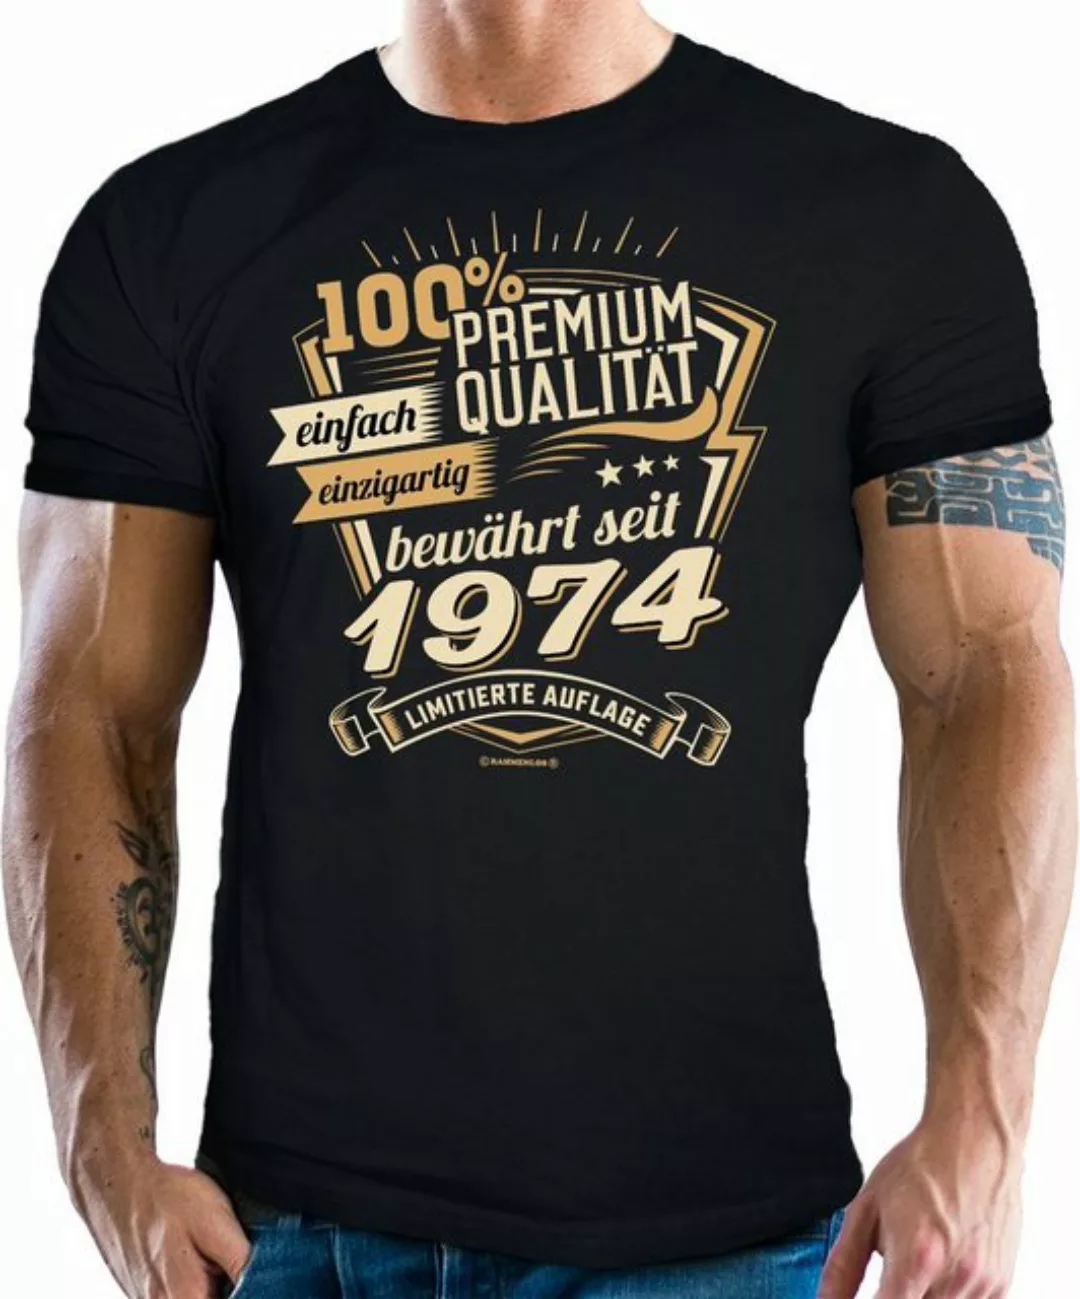 Rahmenlos T-Shirt als Geschenk zum 50. Geburtstag - Premium bewährt seit 19 günstig online kaufen